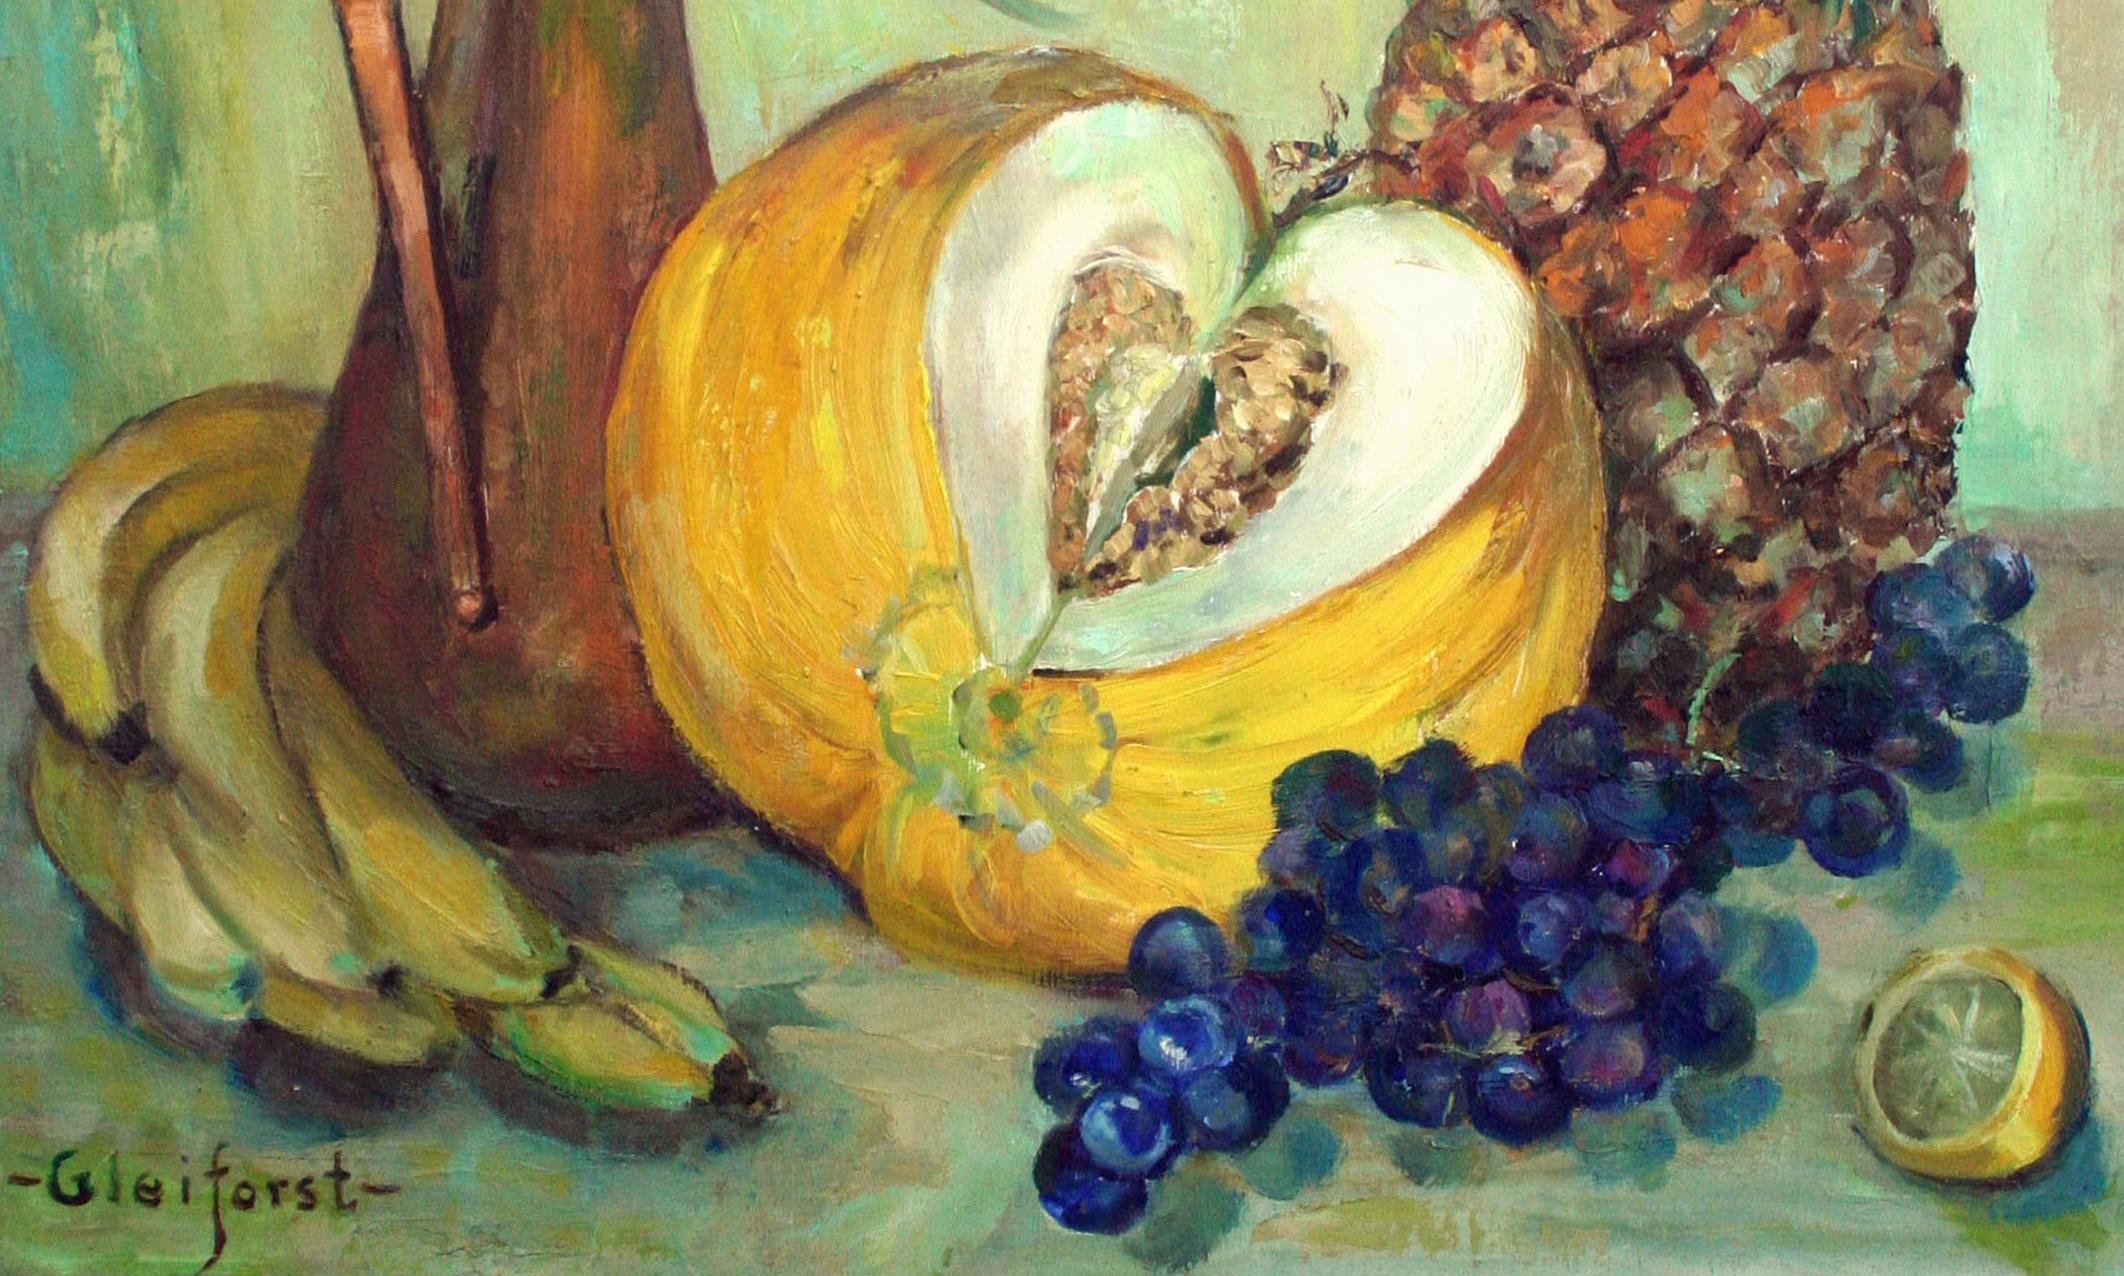 Vase de tournesols et de fruits, nature morte du milieu du siècle dernier - Impressionnisme américain Painting par Helen Enoch Gleiforst